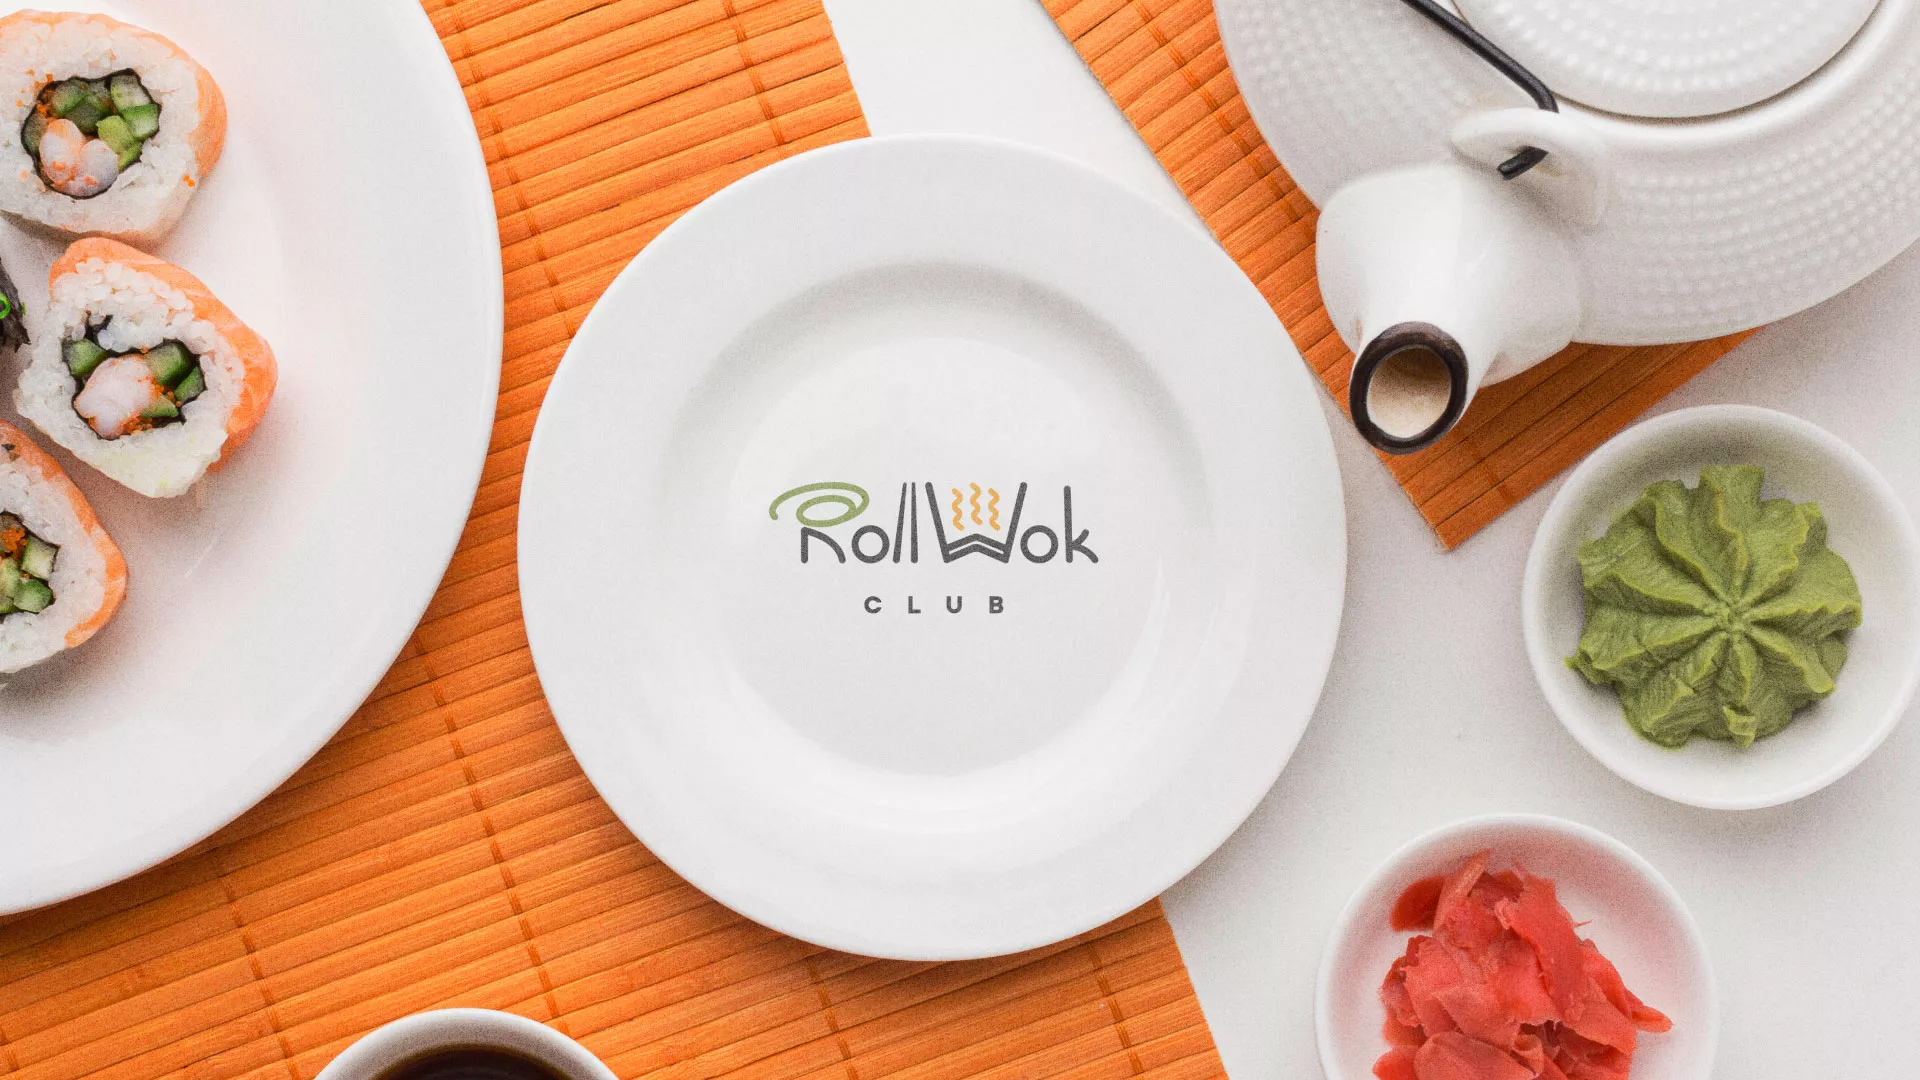 Разработка логотипа и фирменного стиля суши-бара «Roll Wok Club» в Оханске